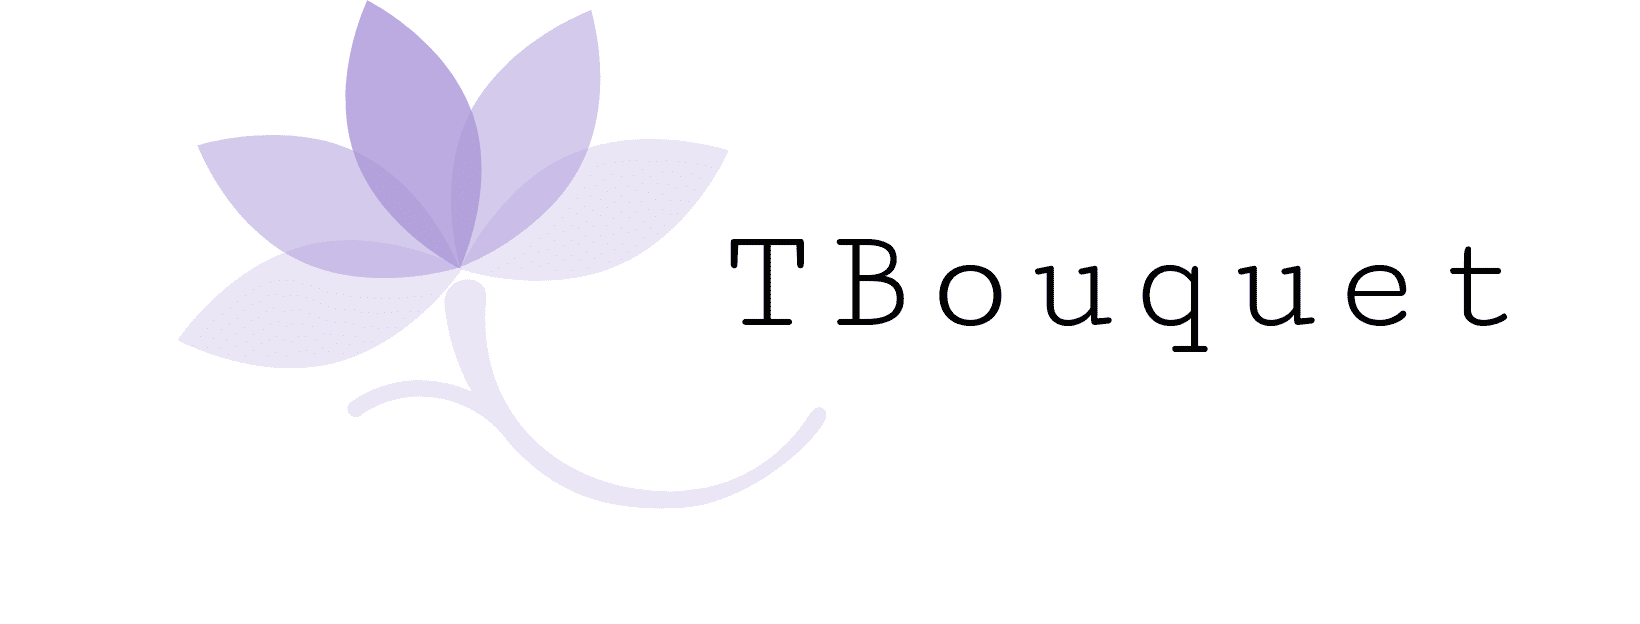 TBouquet